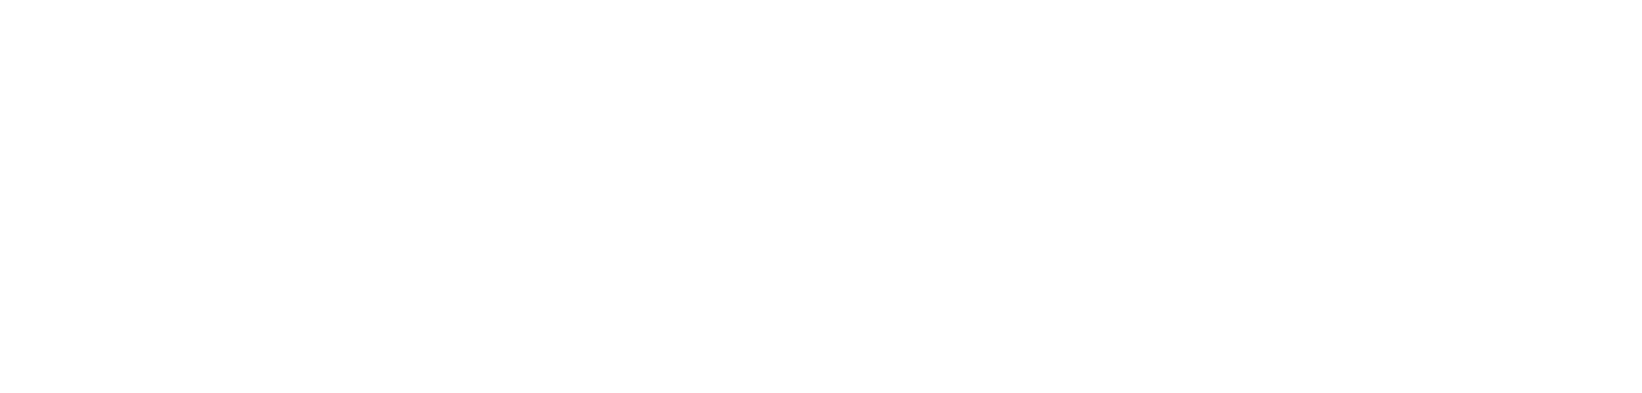 Samsara logo large for dark backgrounds (transparent PNG)